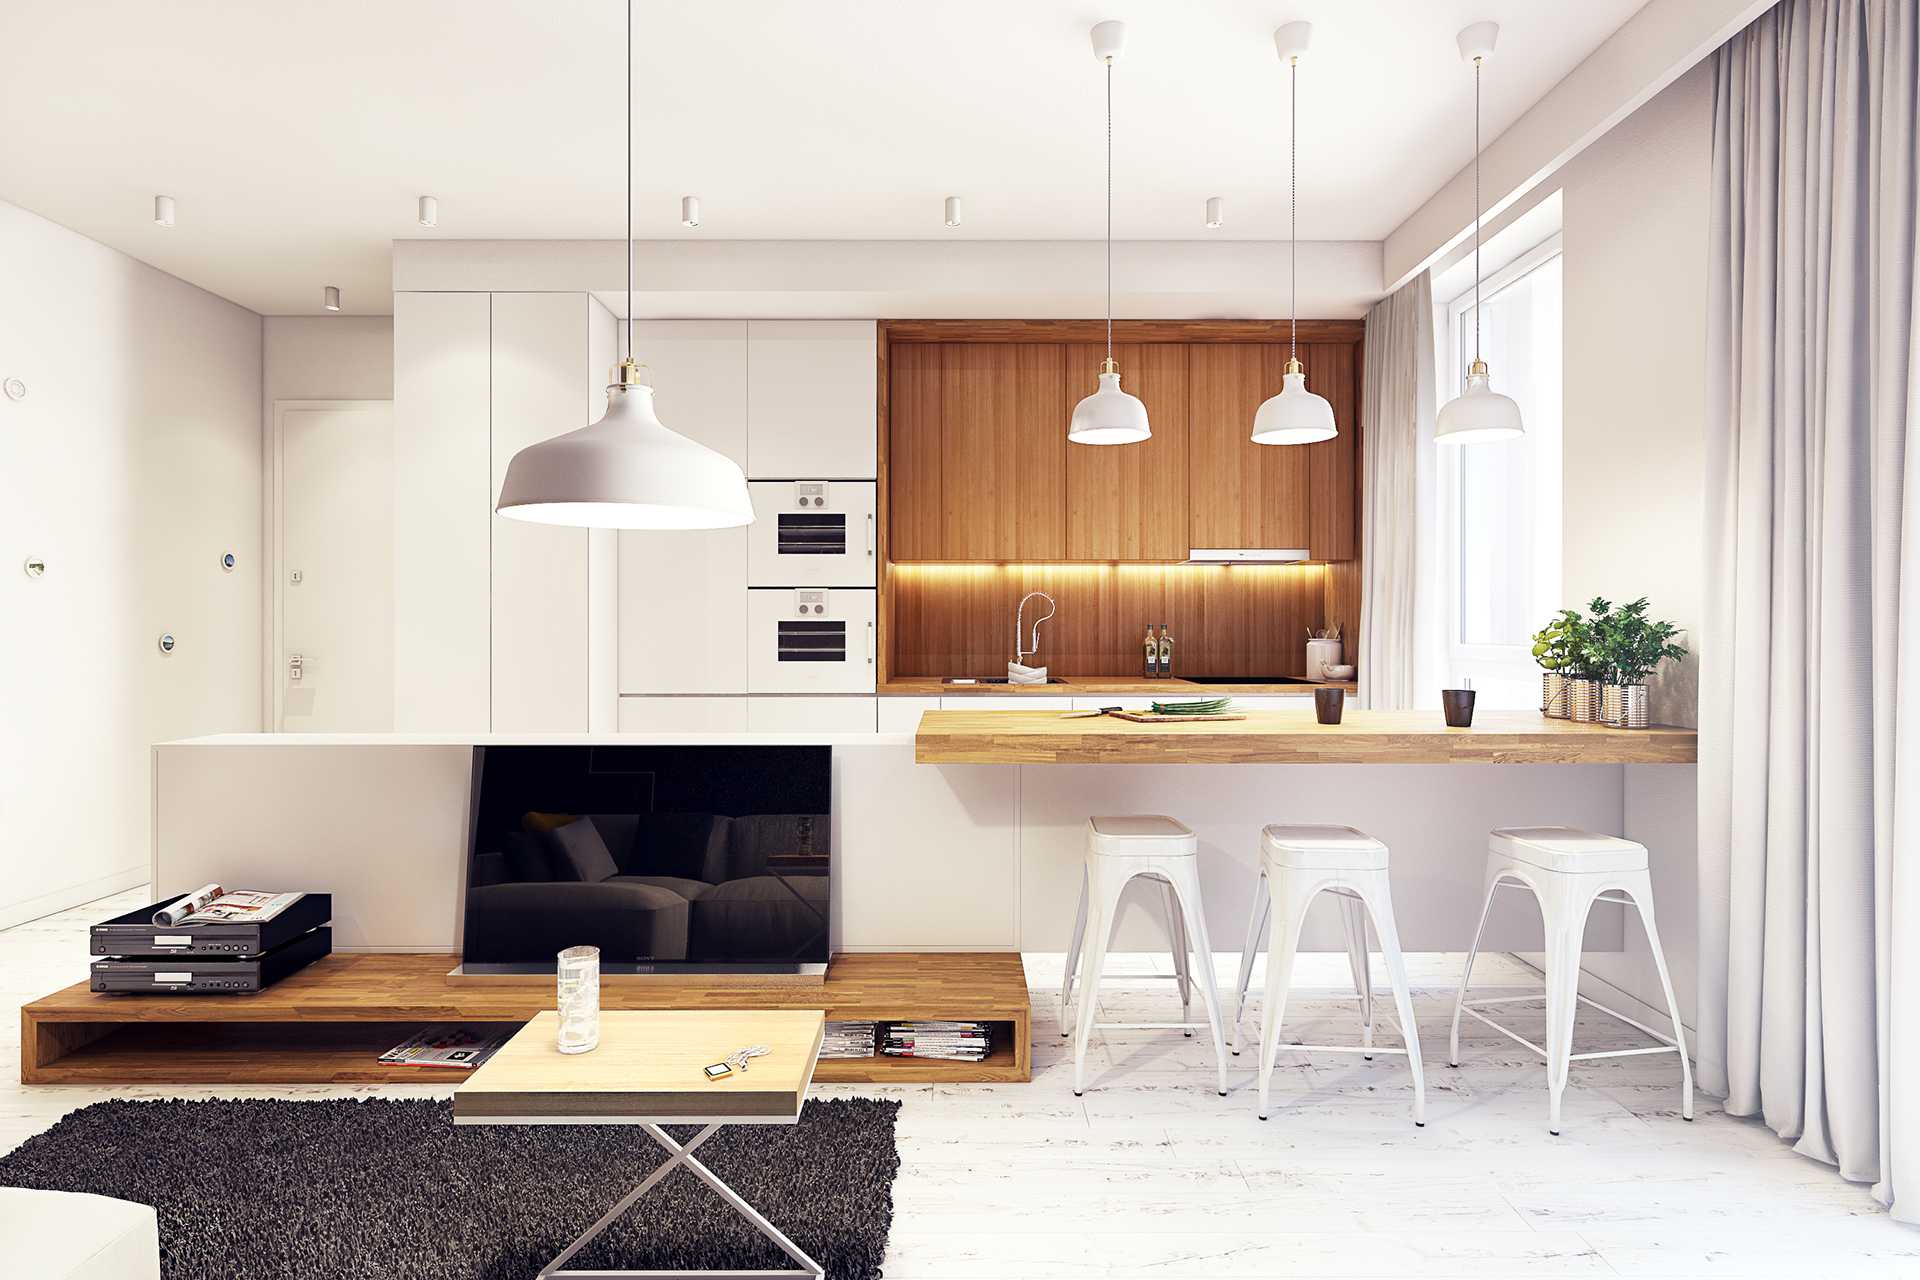 Белая кухня: дизайн и фото лучших кухонных интерьеров в белом цвете